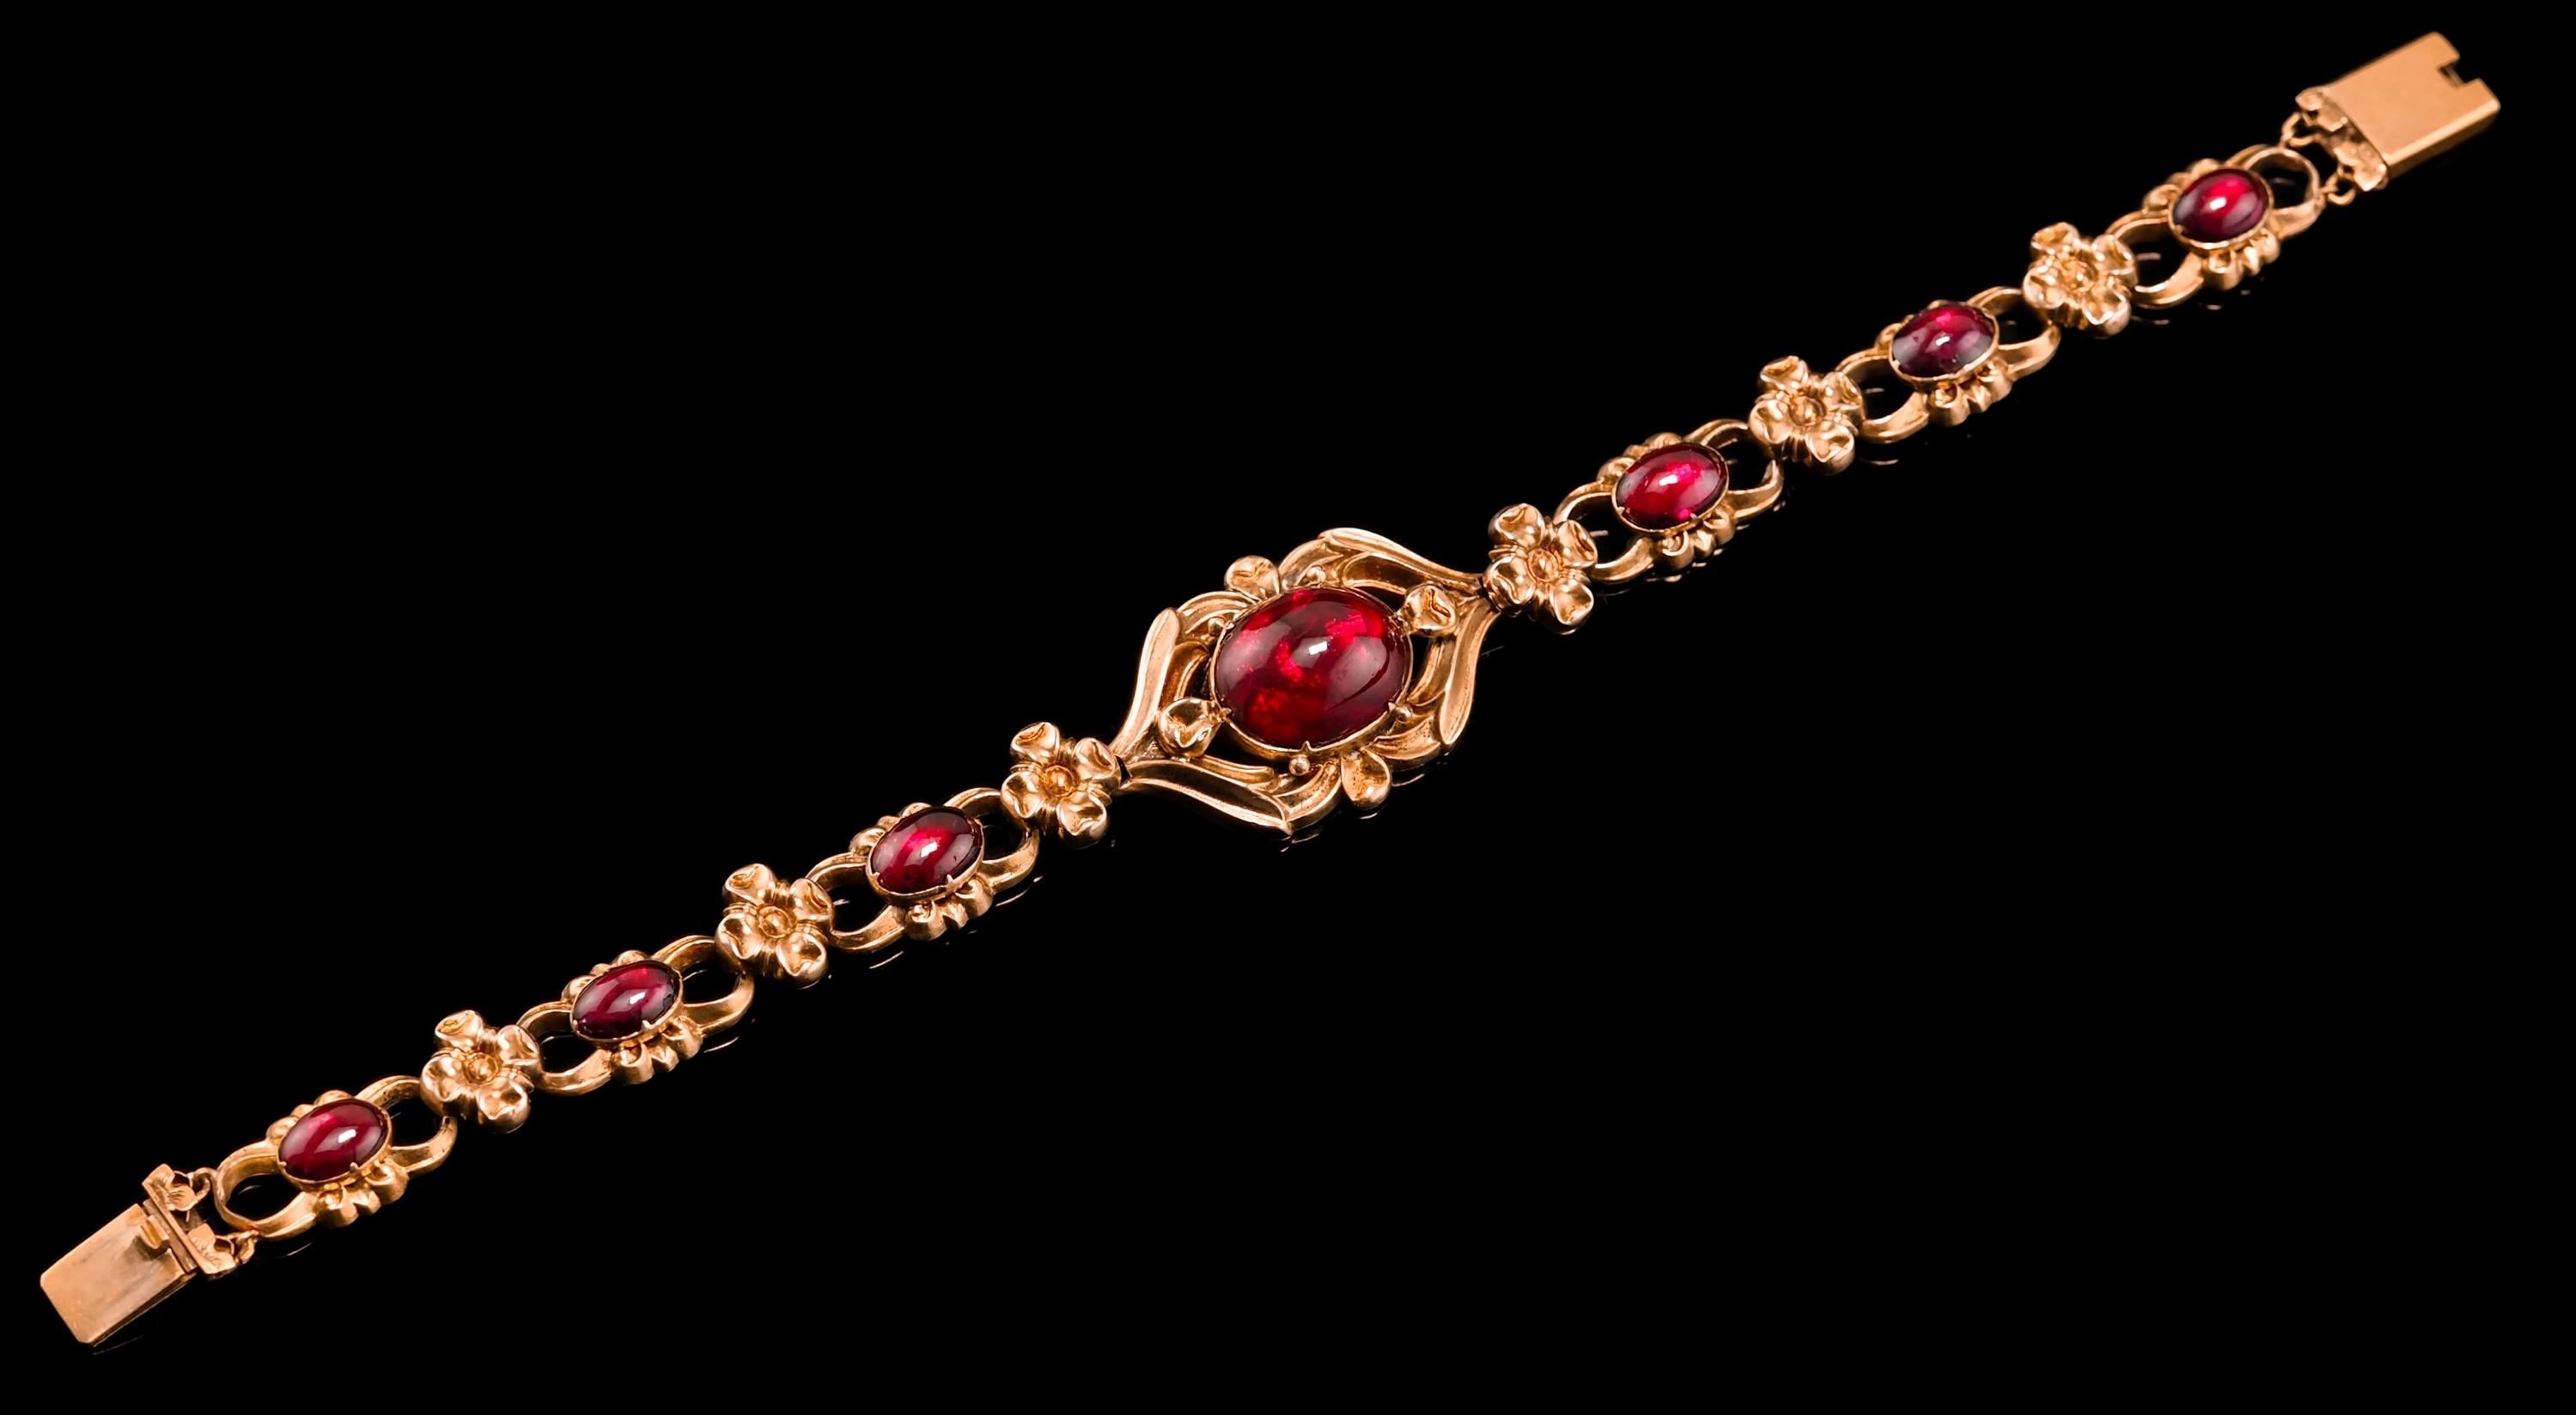 Wir freuen uns, dieses prächtige Granatarmband aus 18 Karat Gold aus der frühen viktorianischen Zeit um 1840 anbieten zu können.
   
Dieses wunderschöne Armband mit Blumenmotiv ist aus hochkarätigem Gold (18ct+ getestet) gefertigt. Er präsentiert